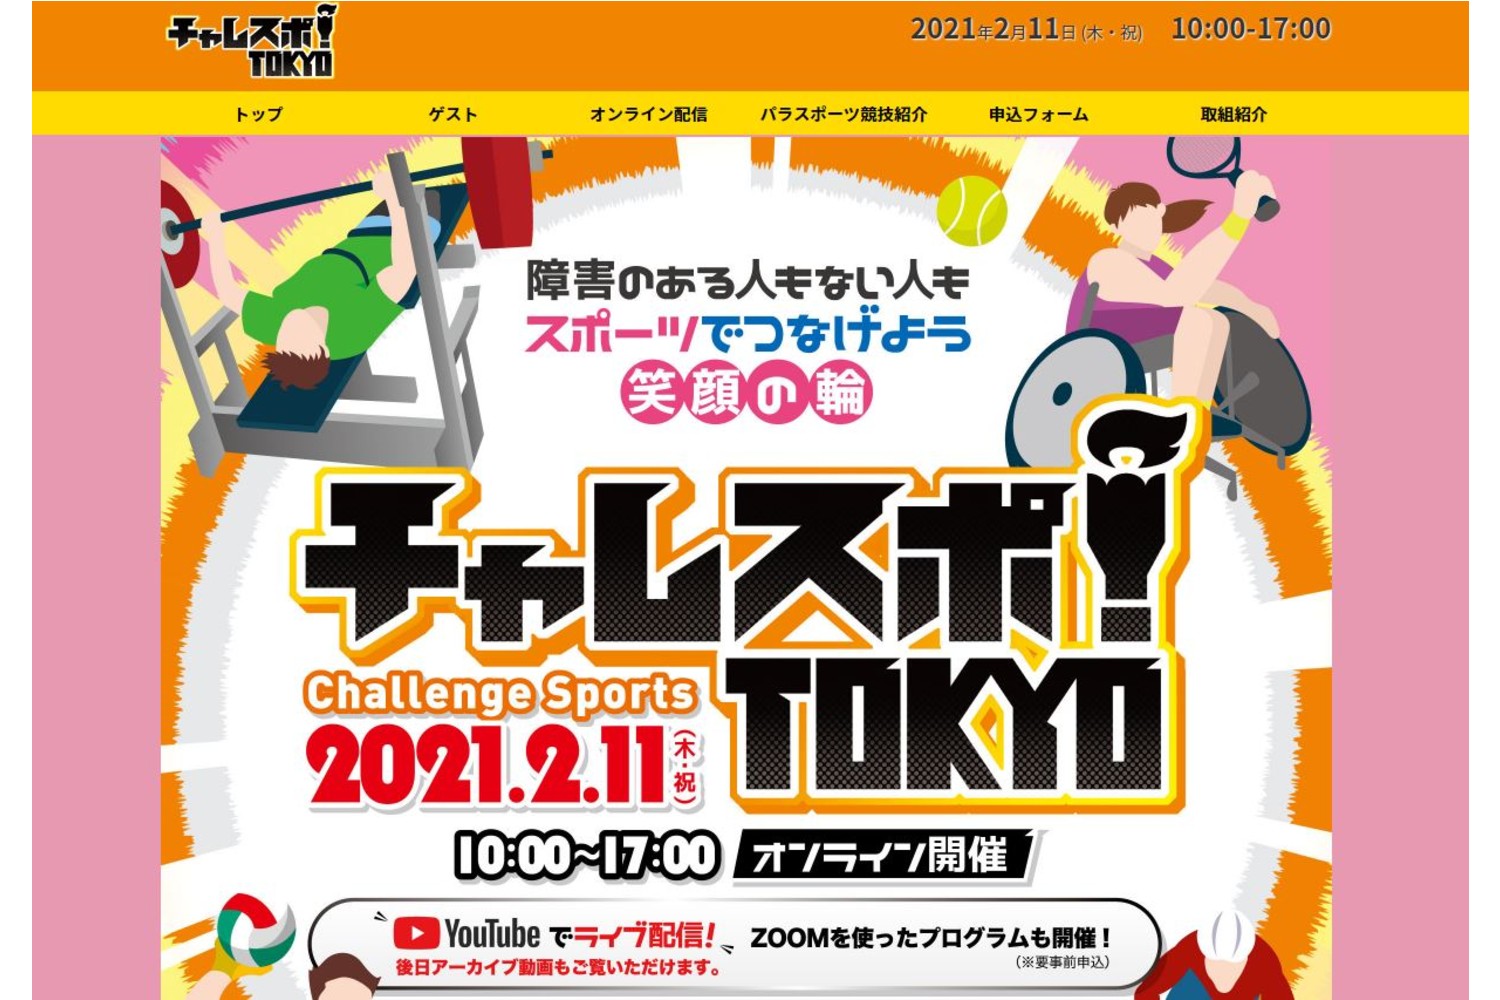 『パラスポーツVR体験』「チャレスポ！TOKYO」オンラインイベントにてVRコンテンツおよびVRスコープを提供